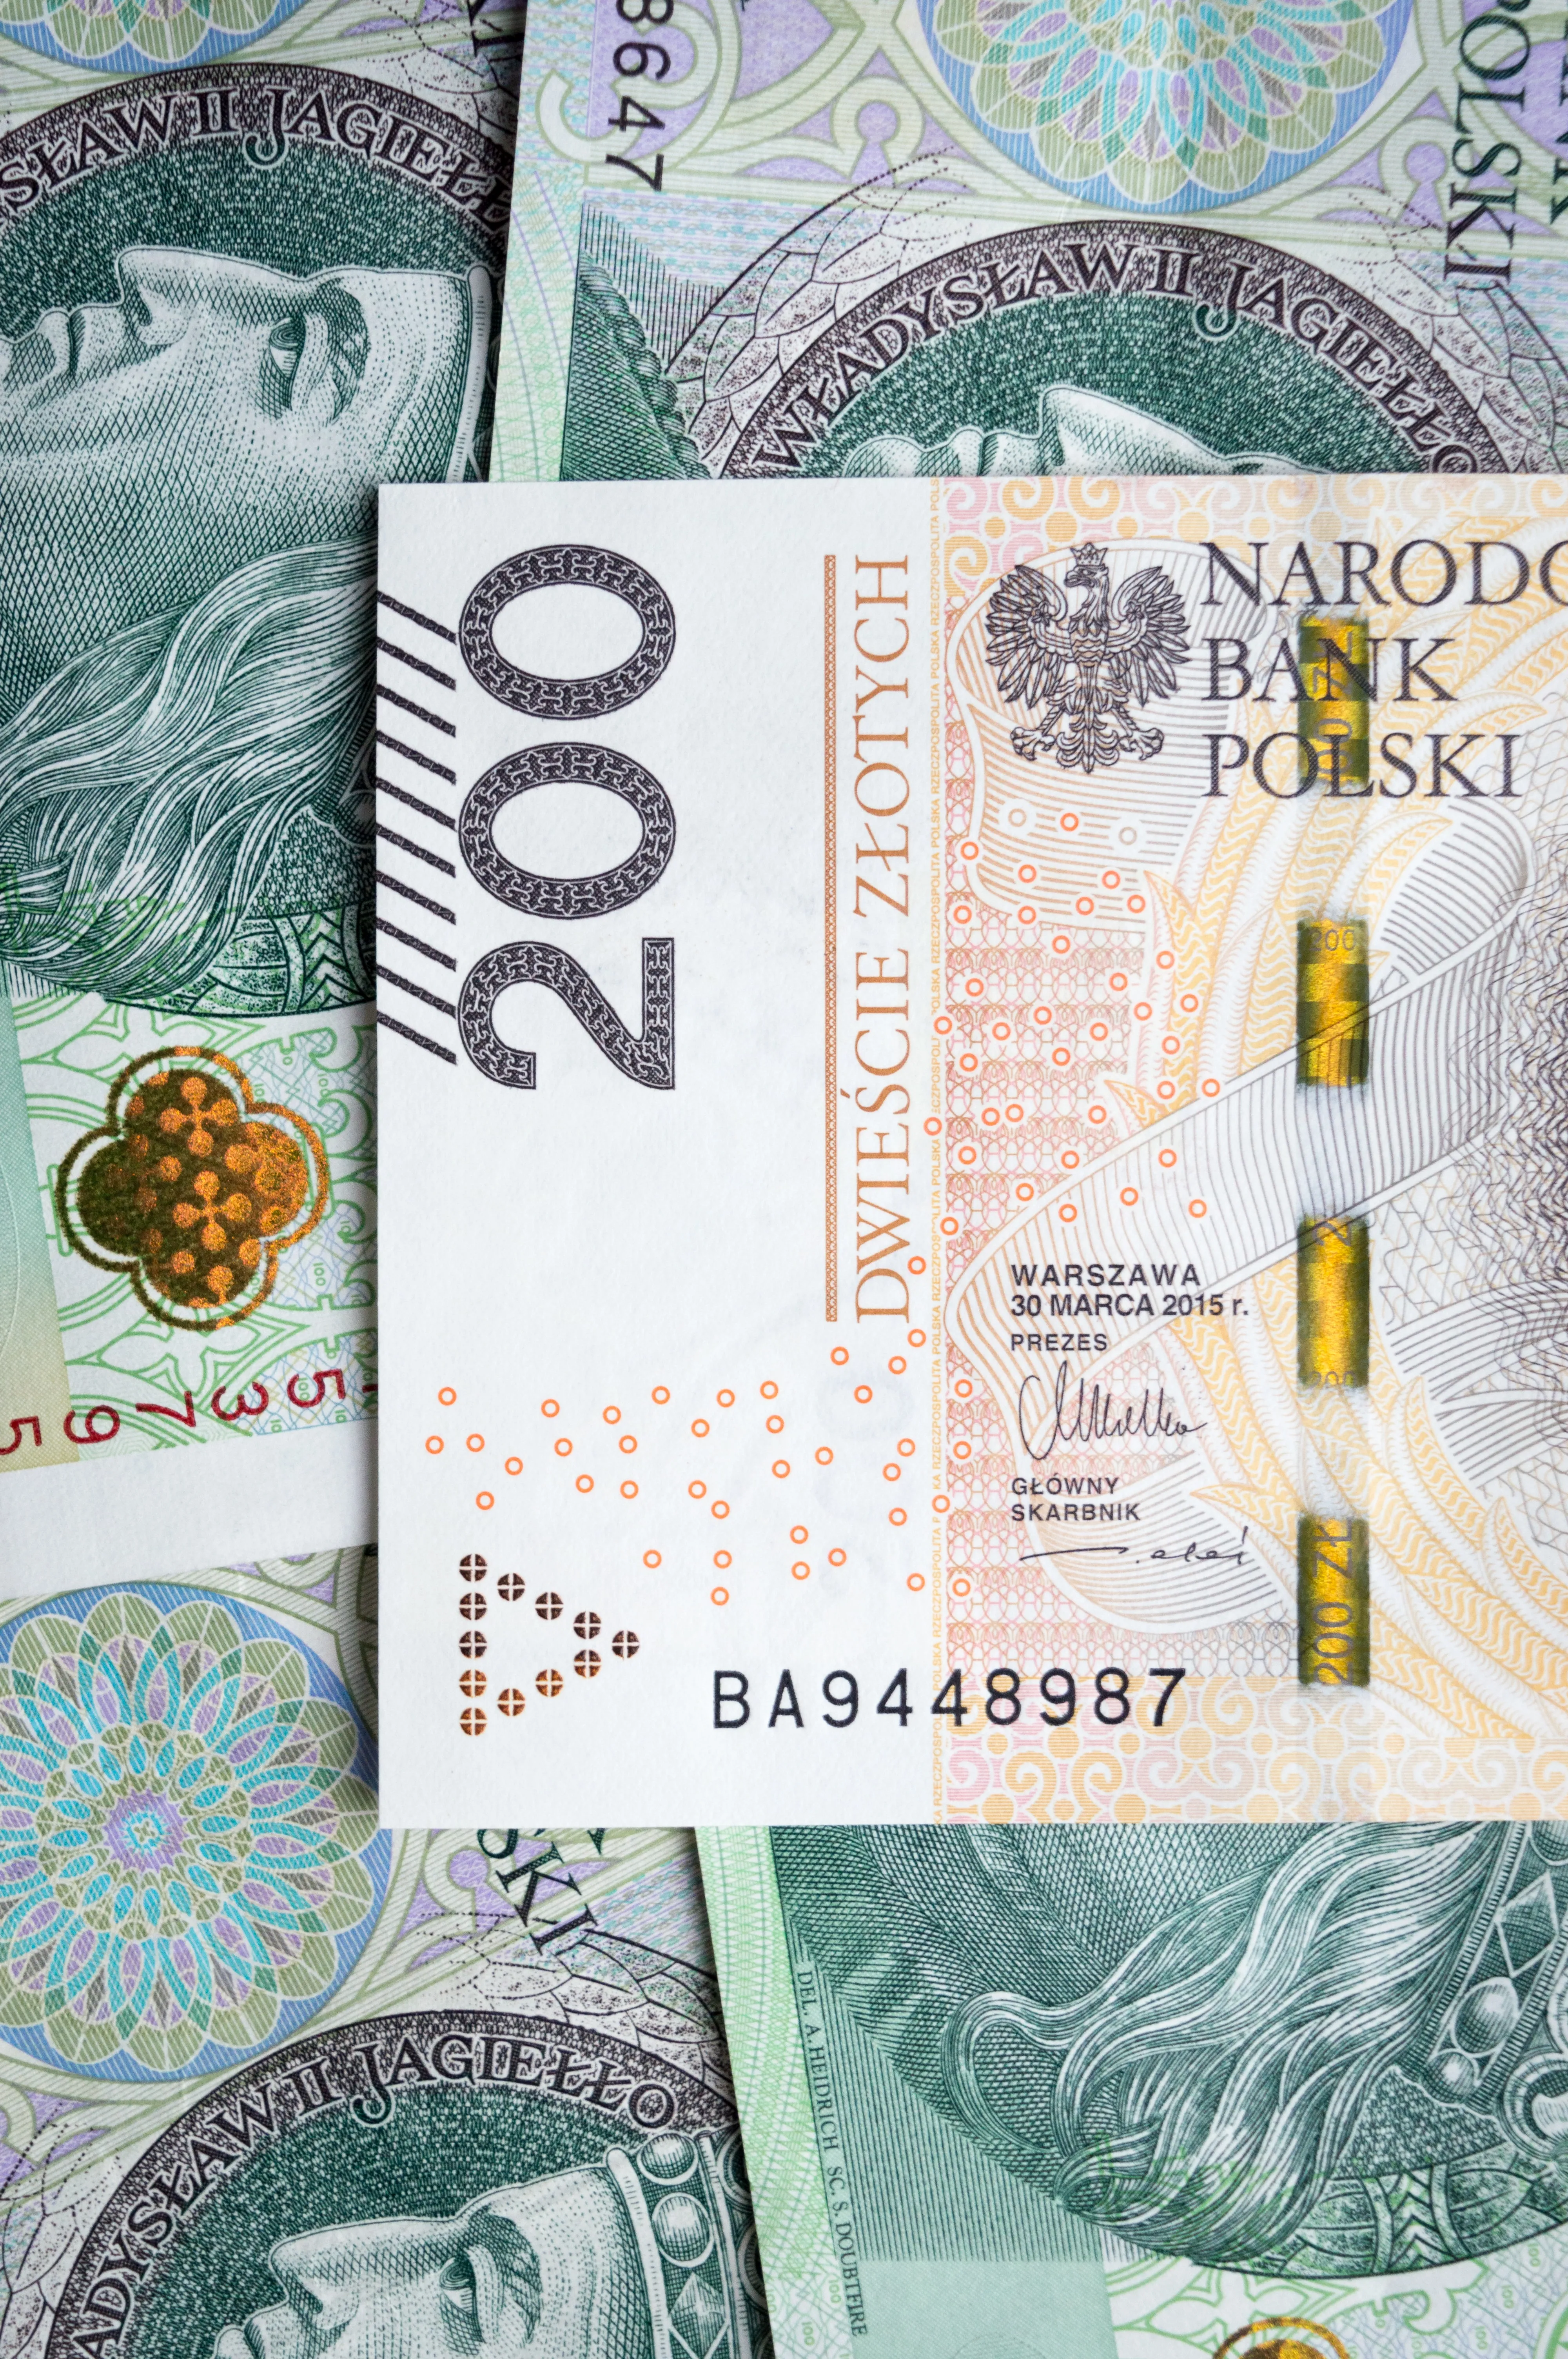 На что украинцы берут кредиты в банках Польши